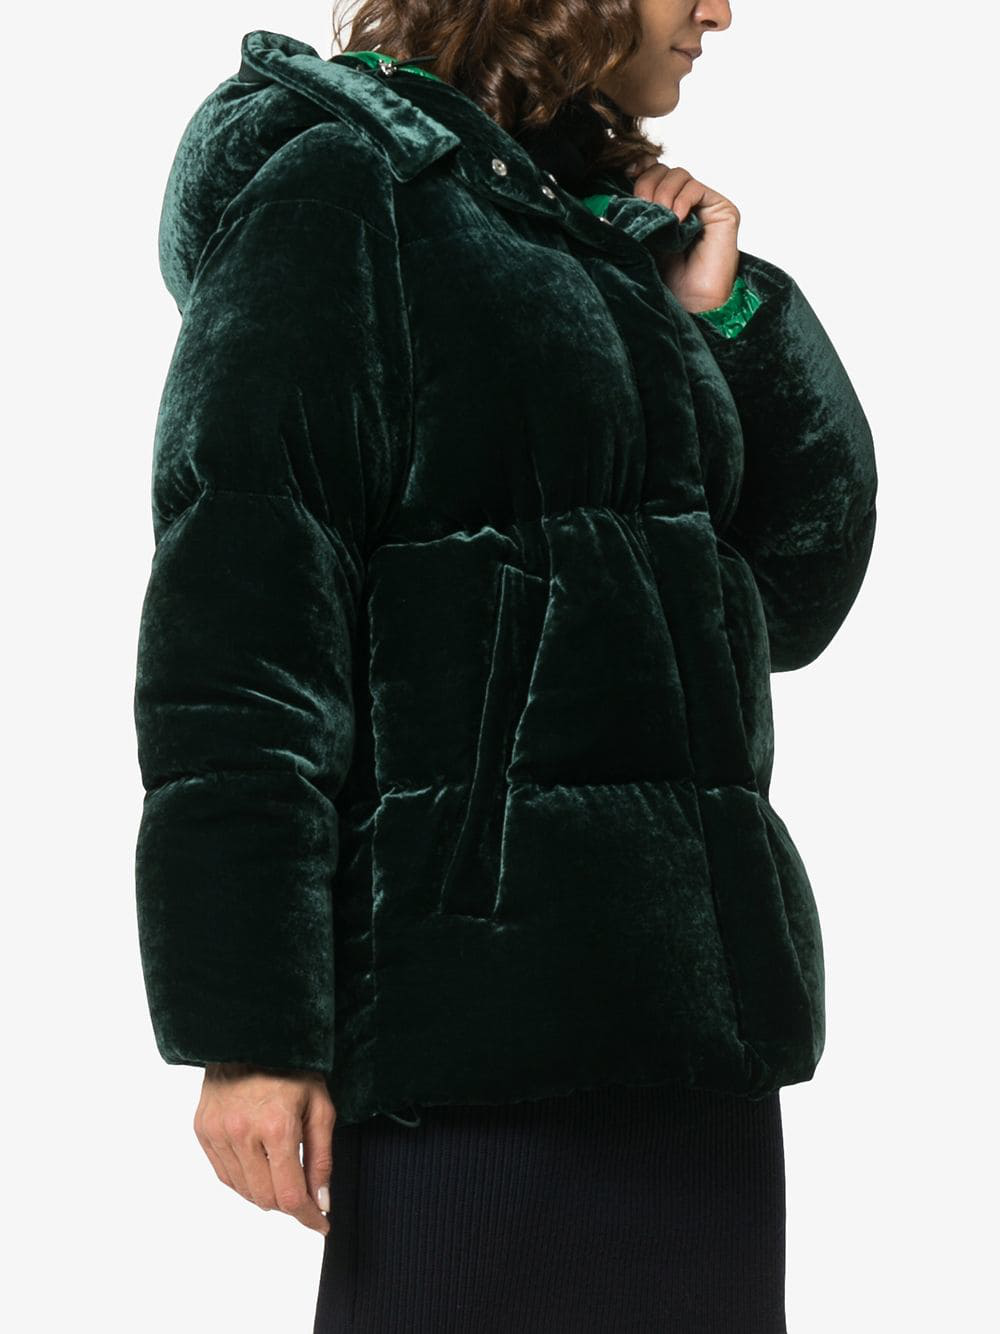 Moncler Green Velvet Jacket Hotsell, SAVE 51%.